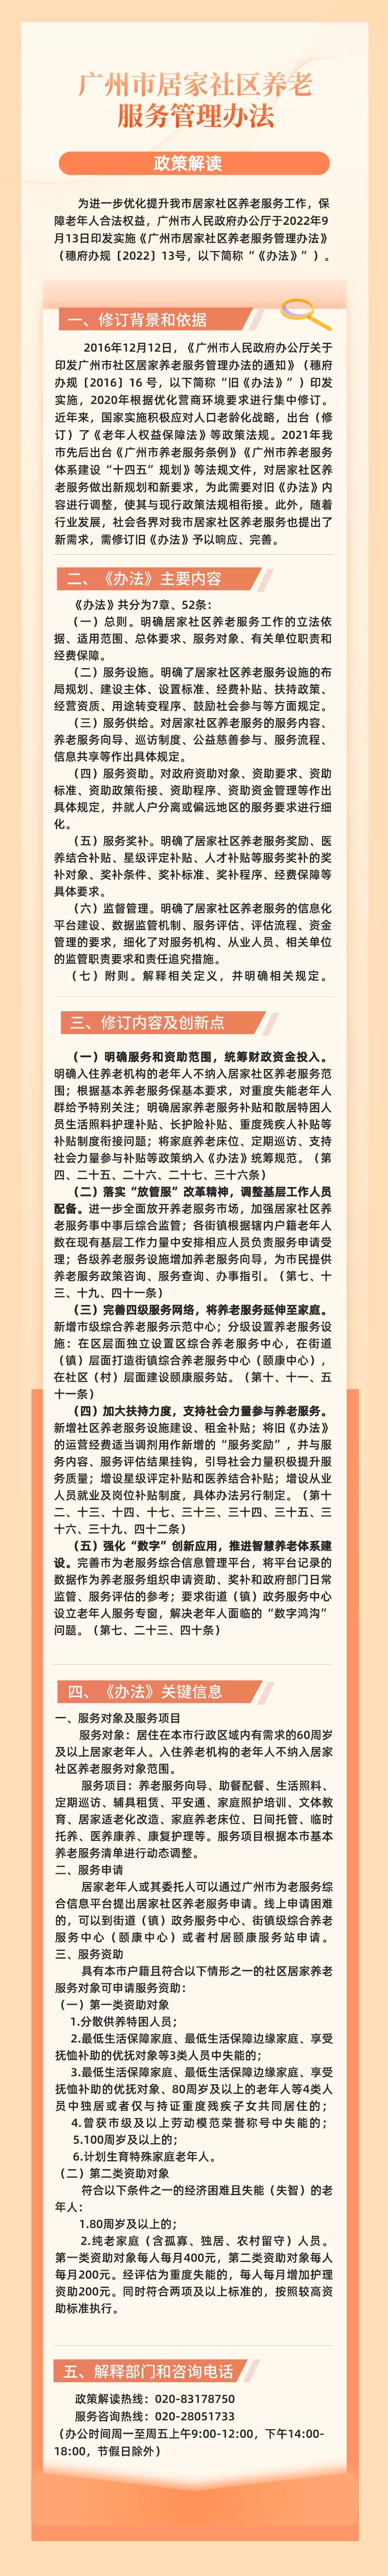 【一图读懂】《广州市居家社区养老服务管理办法》.jpg